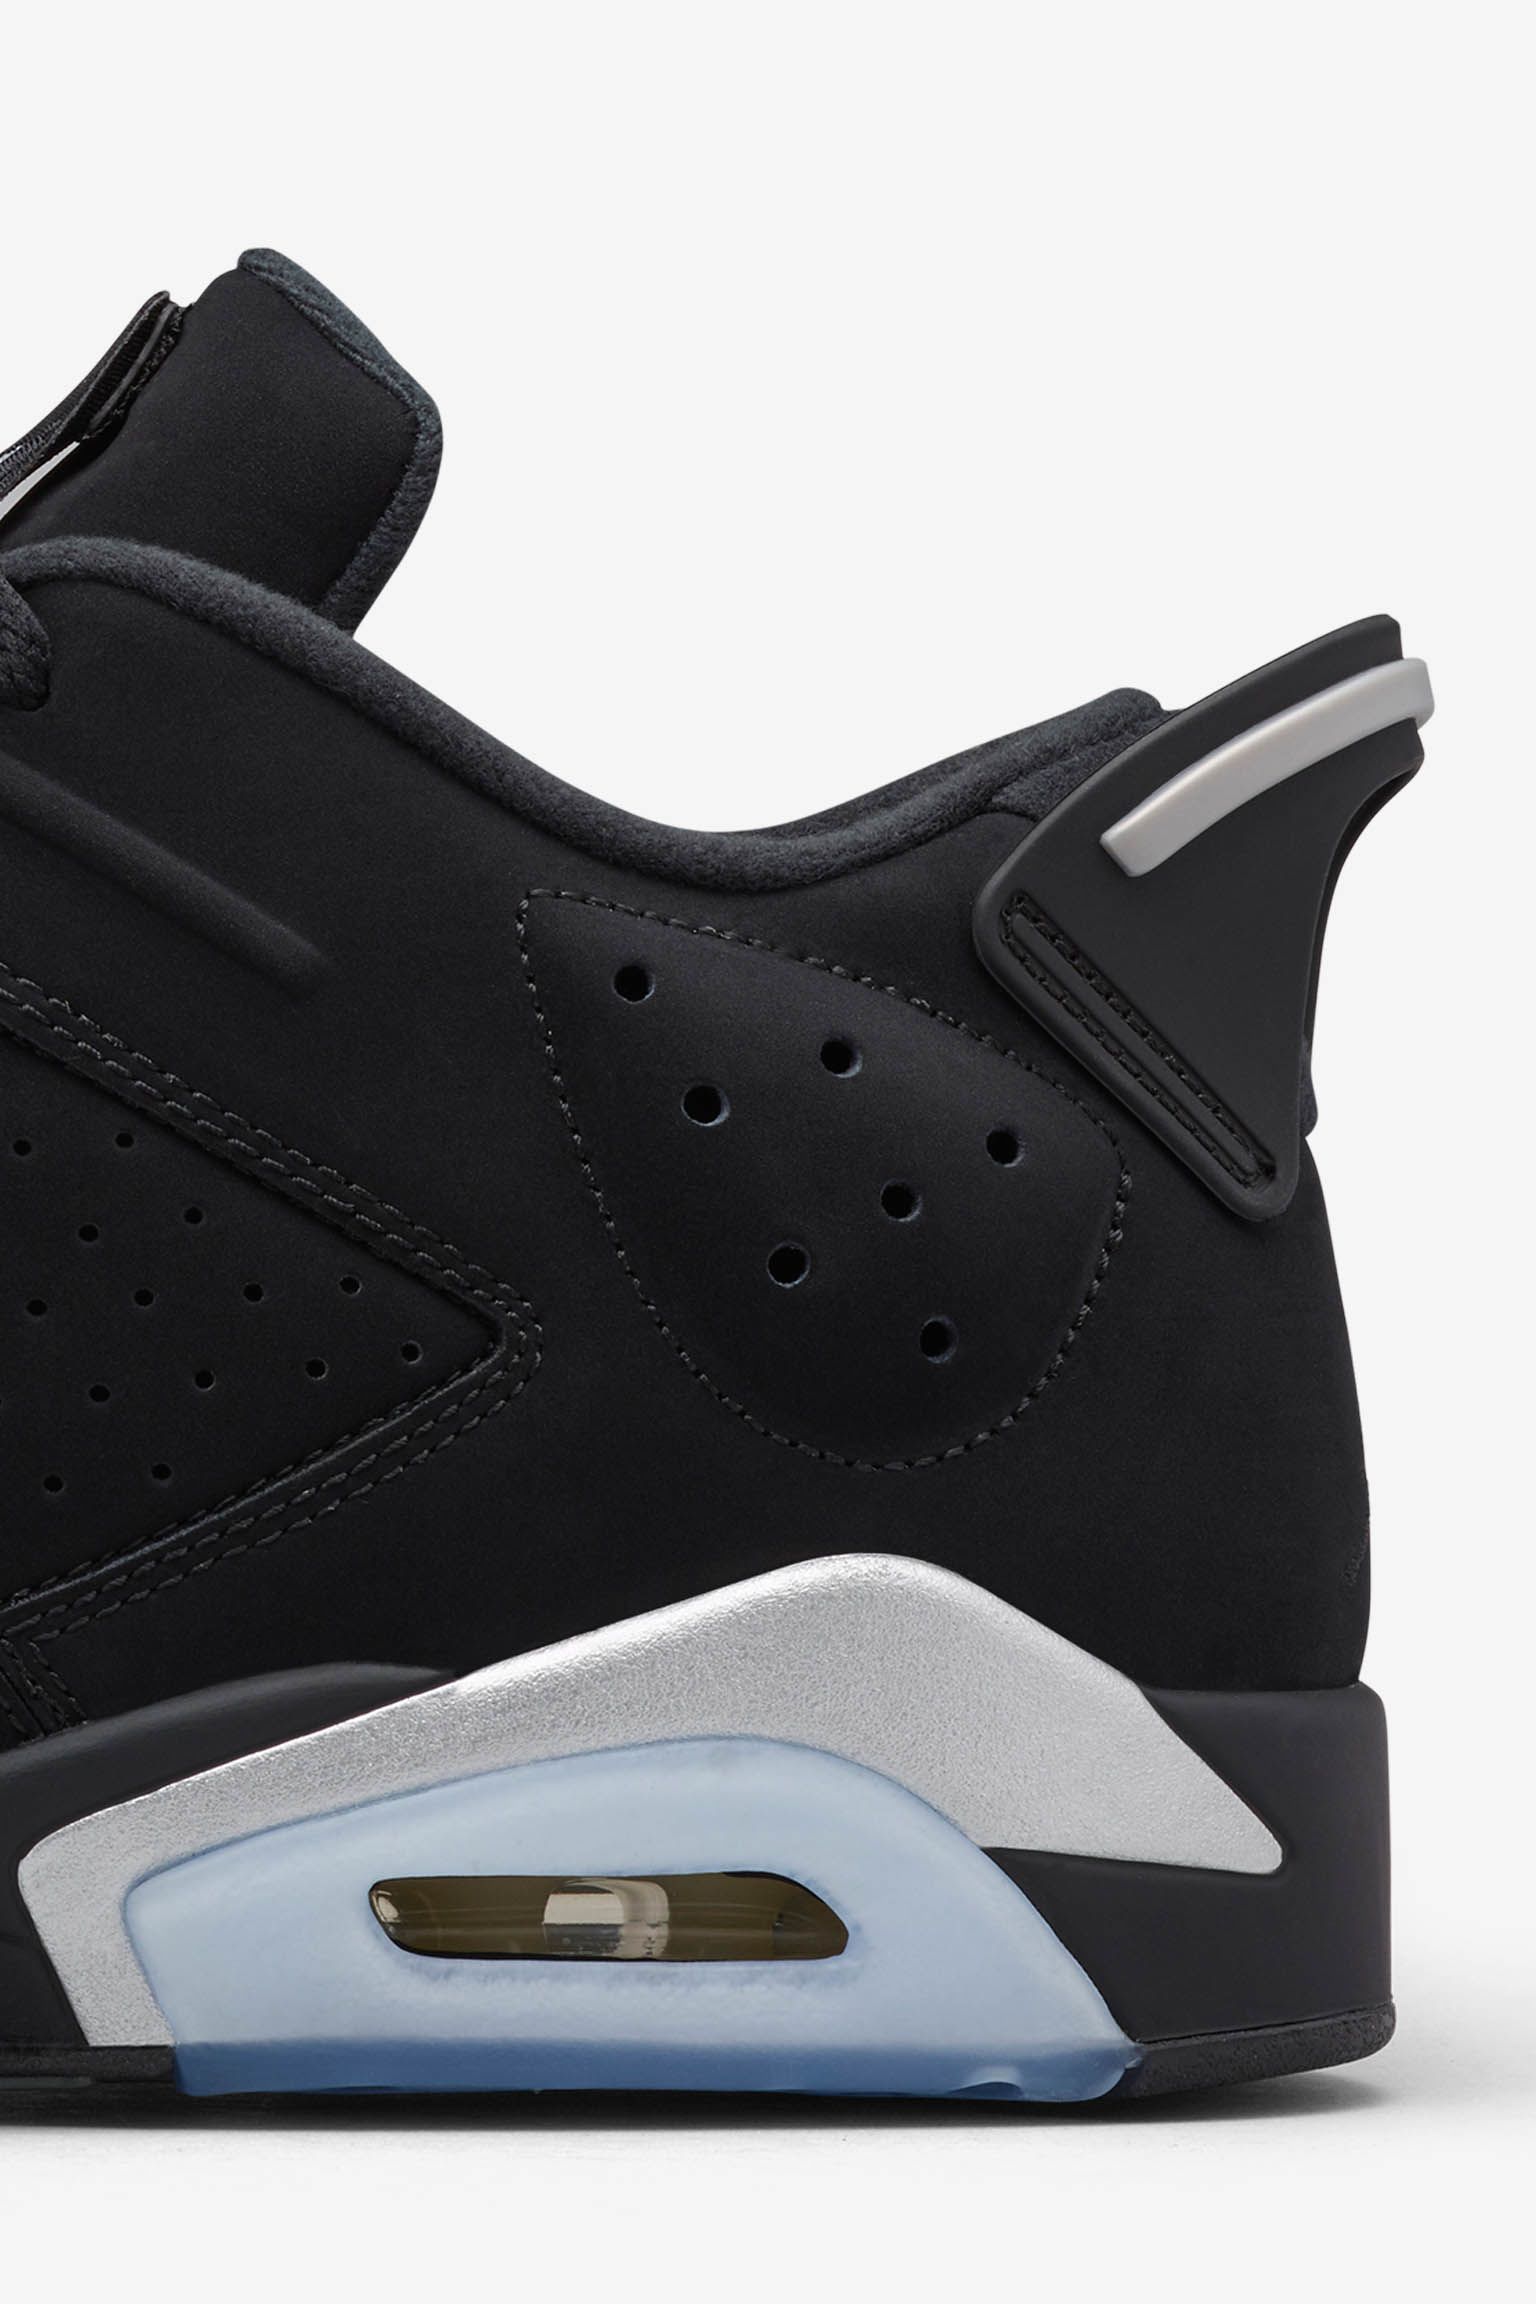 Air Jordan 6 Retro Low 'Metallic Silver' Release Date. Nike SNKRS